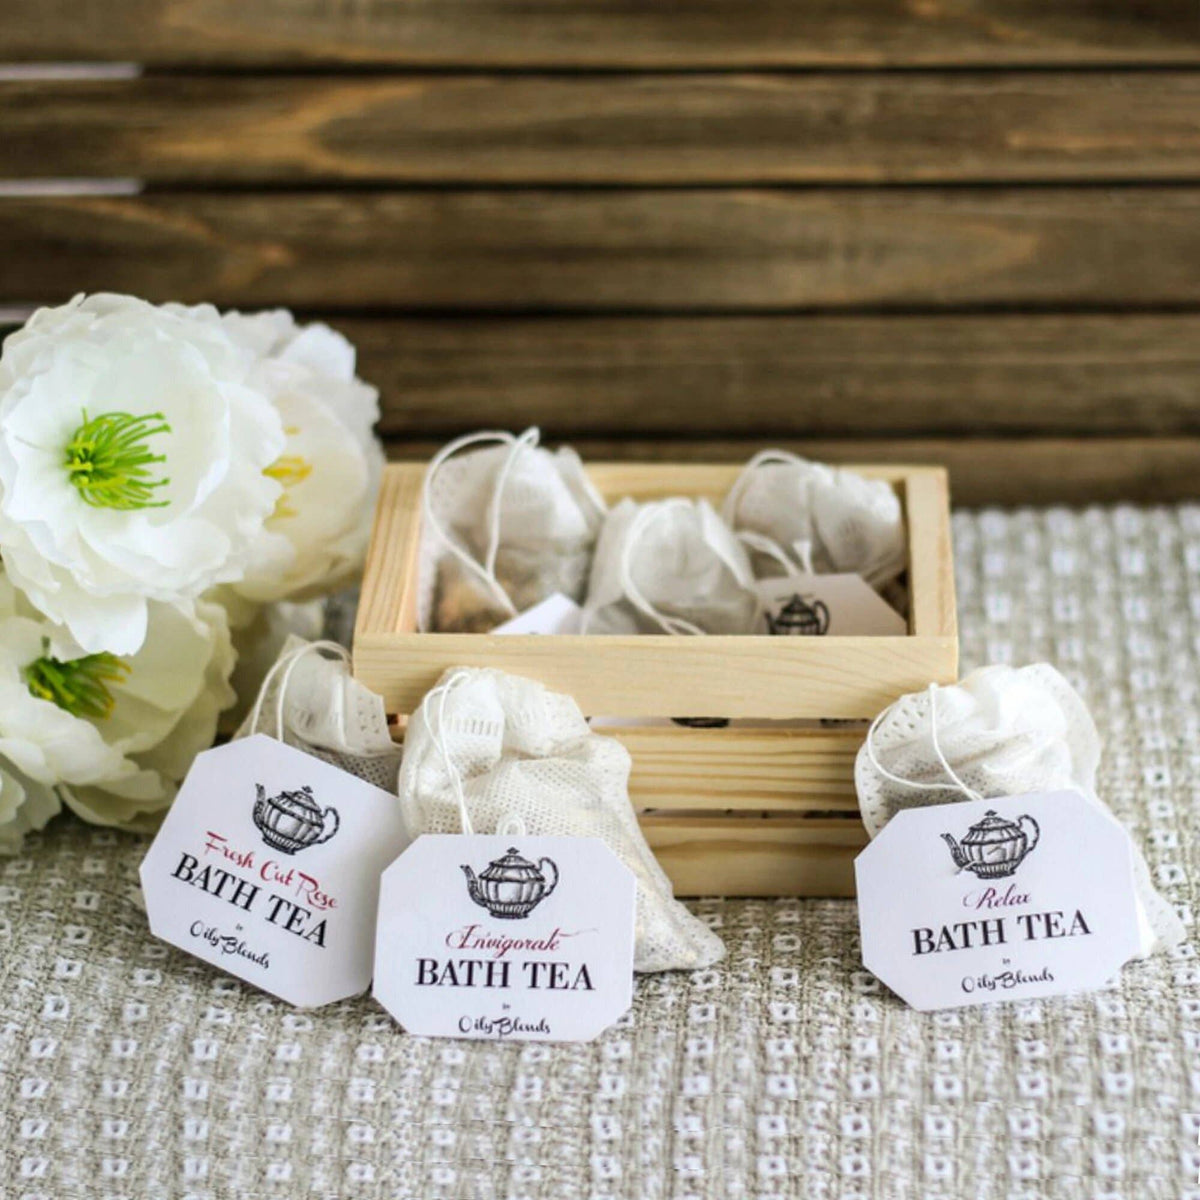 Bath Tea Single Bag Eucalyptus Essential Oil